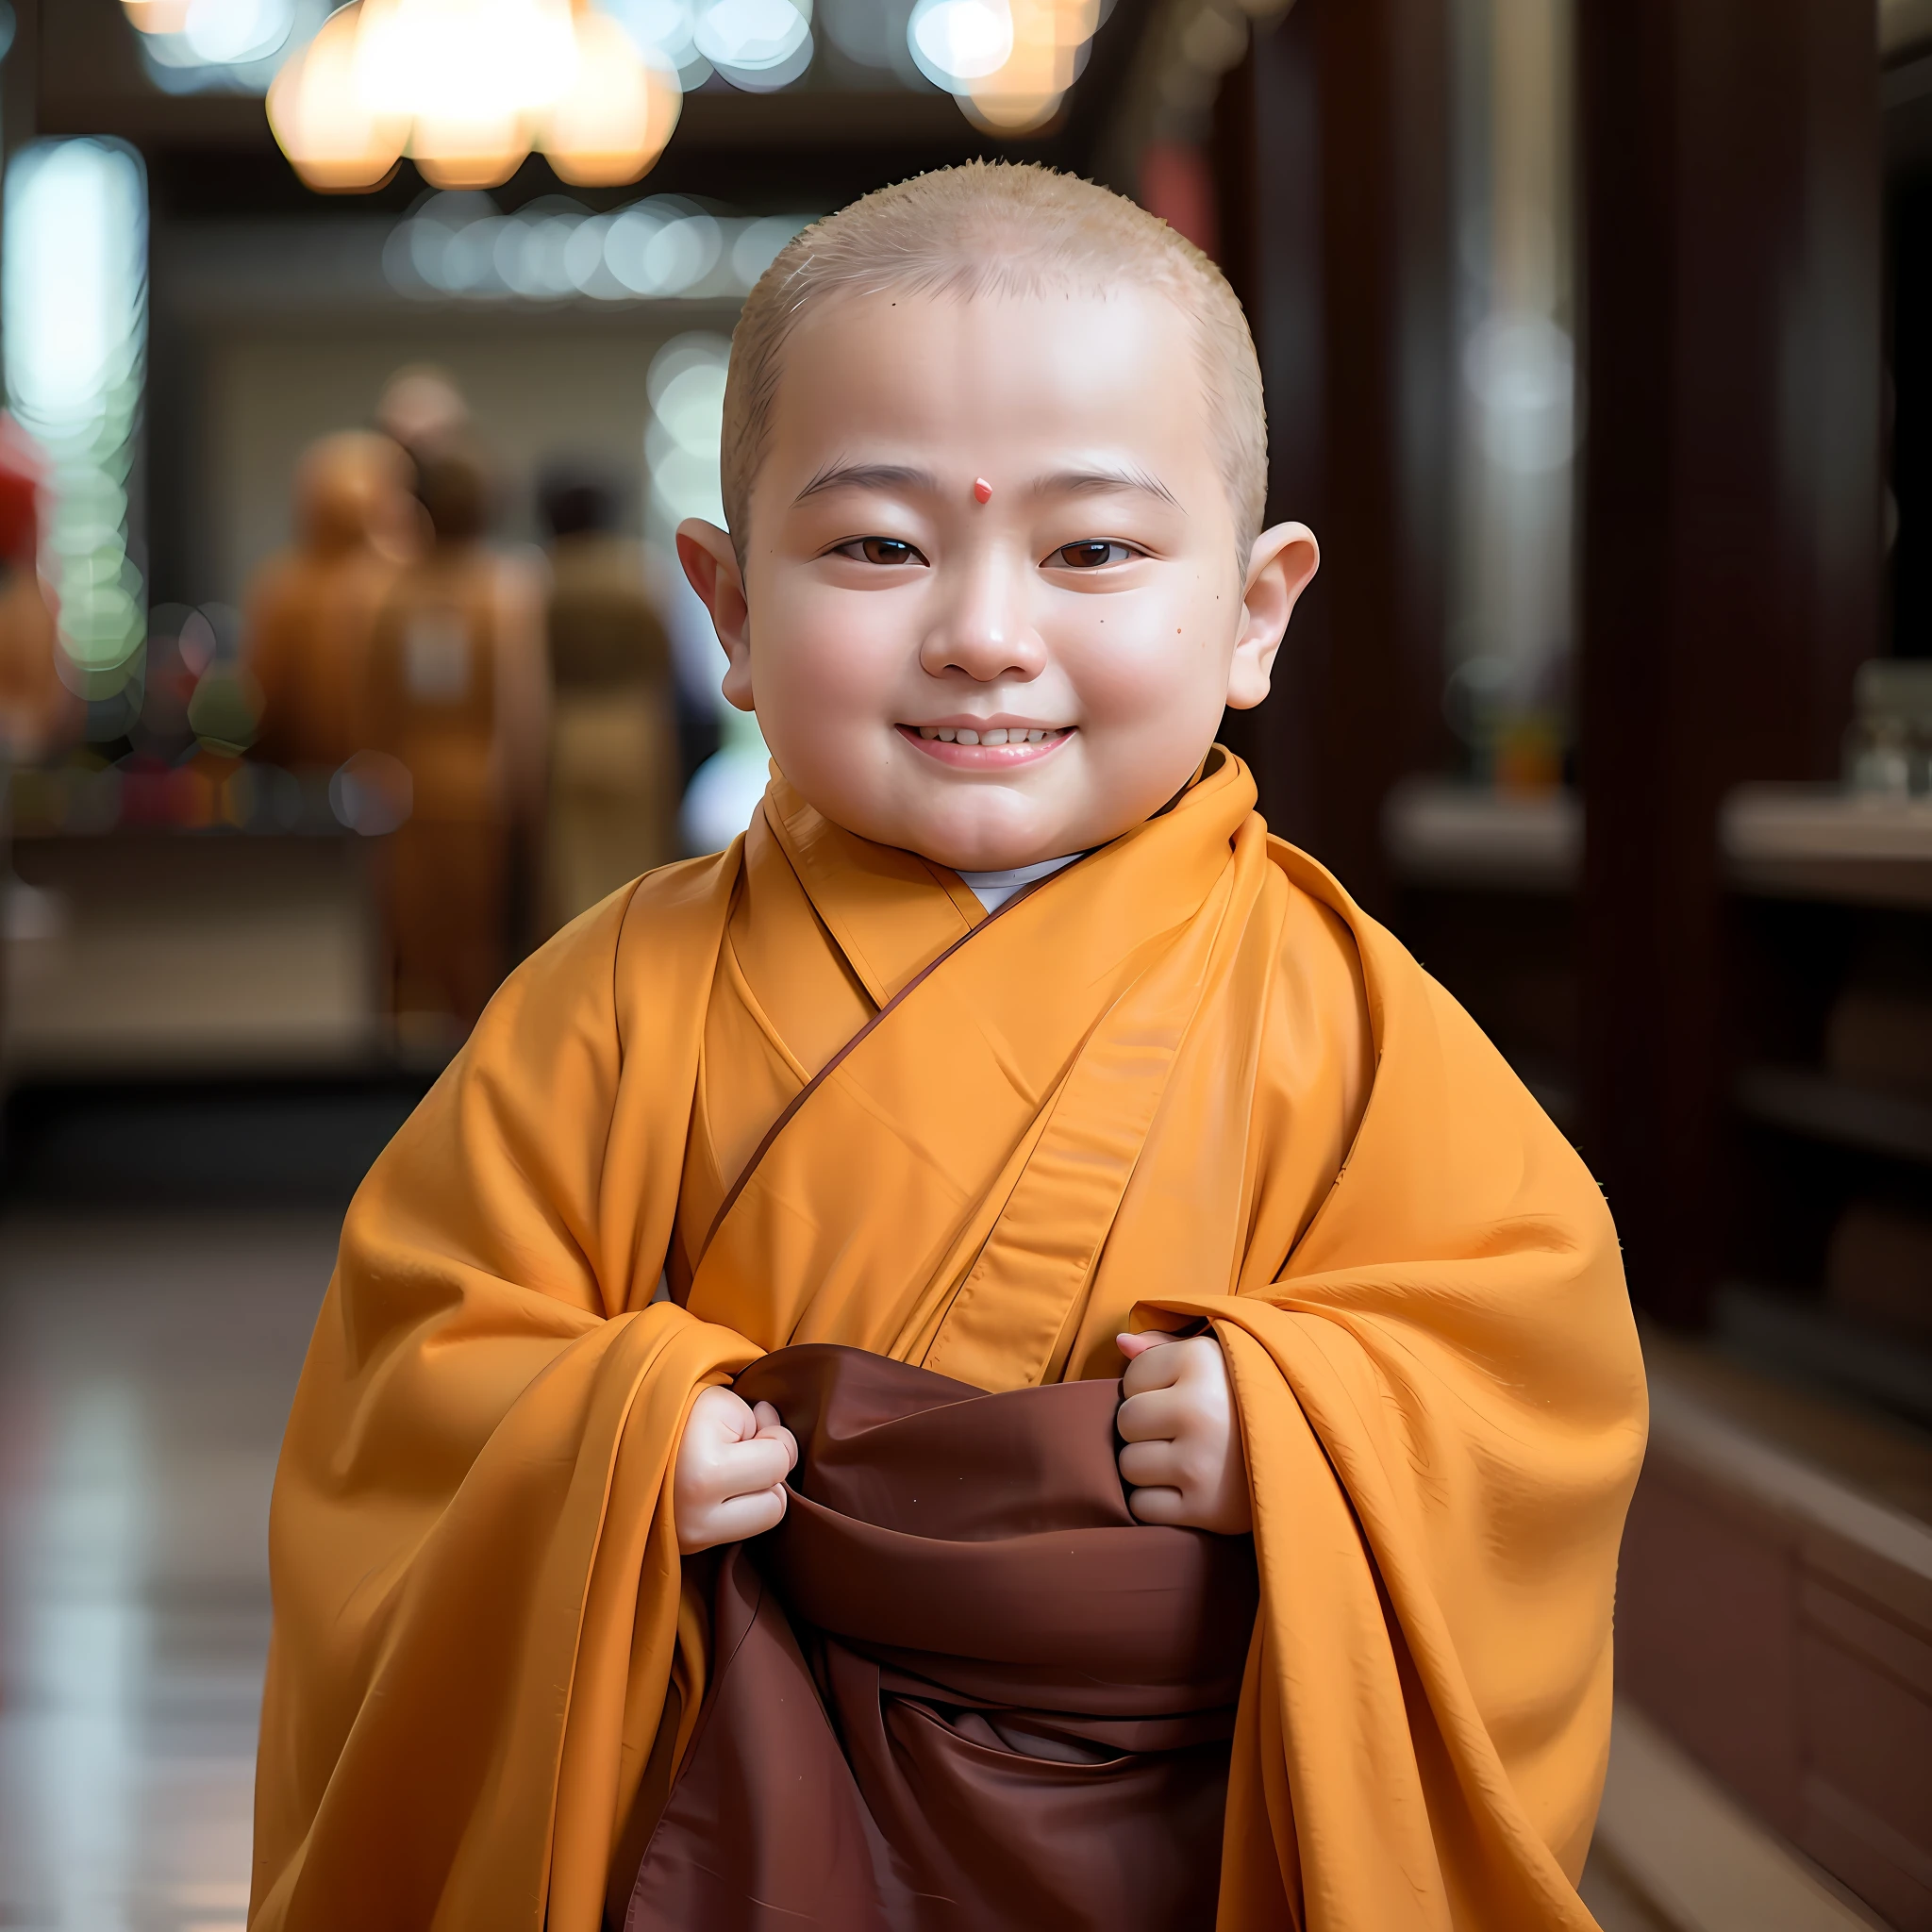 Outro, a baby in a monge's robe, sorriu e segurou um pedaço de pano, wearing manto marroms, monge clothes, buddhist monge, garotinho vestindo roupa de freira, vestindo um longo manto esvoaçante, budista, portrait of monge, vestido com roupas simples, monge, ancient japanese monge, 2 1 st century monge, Manto de monge, vestindo vestes jedi marrons, manto marrom, cara de criança，careca。